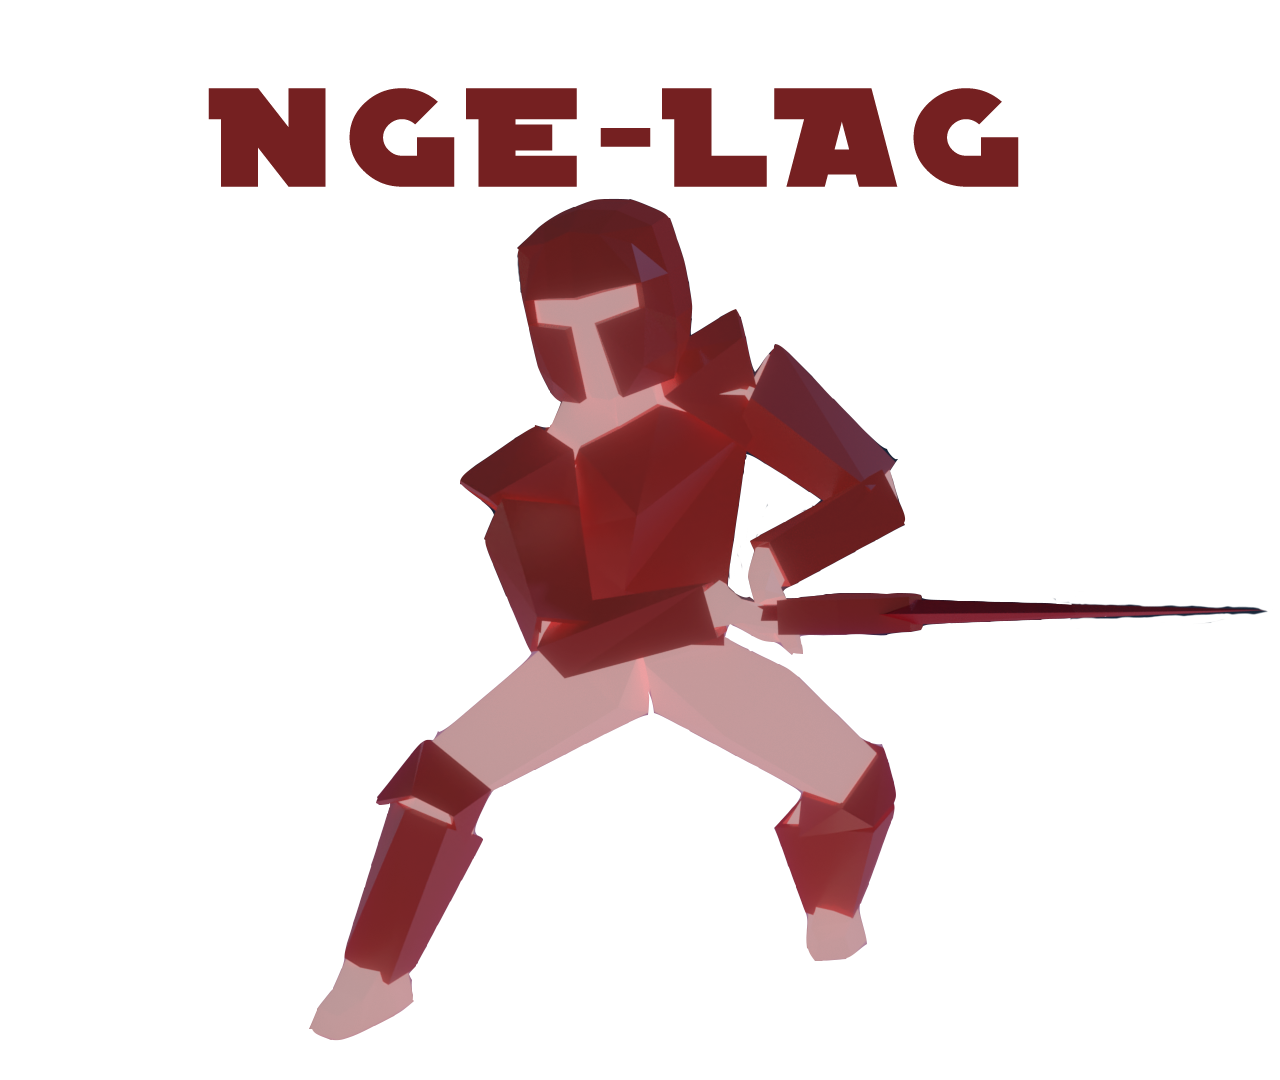 NGE-LAG